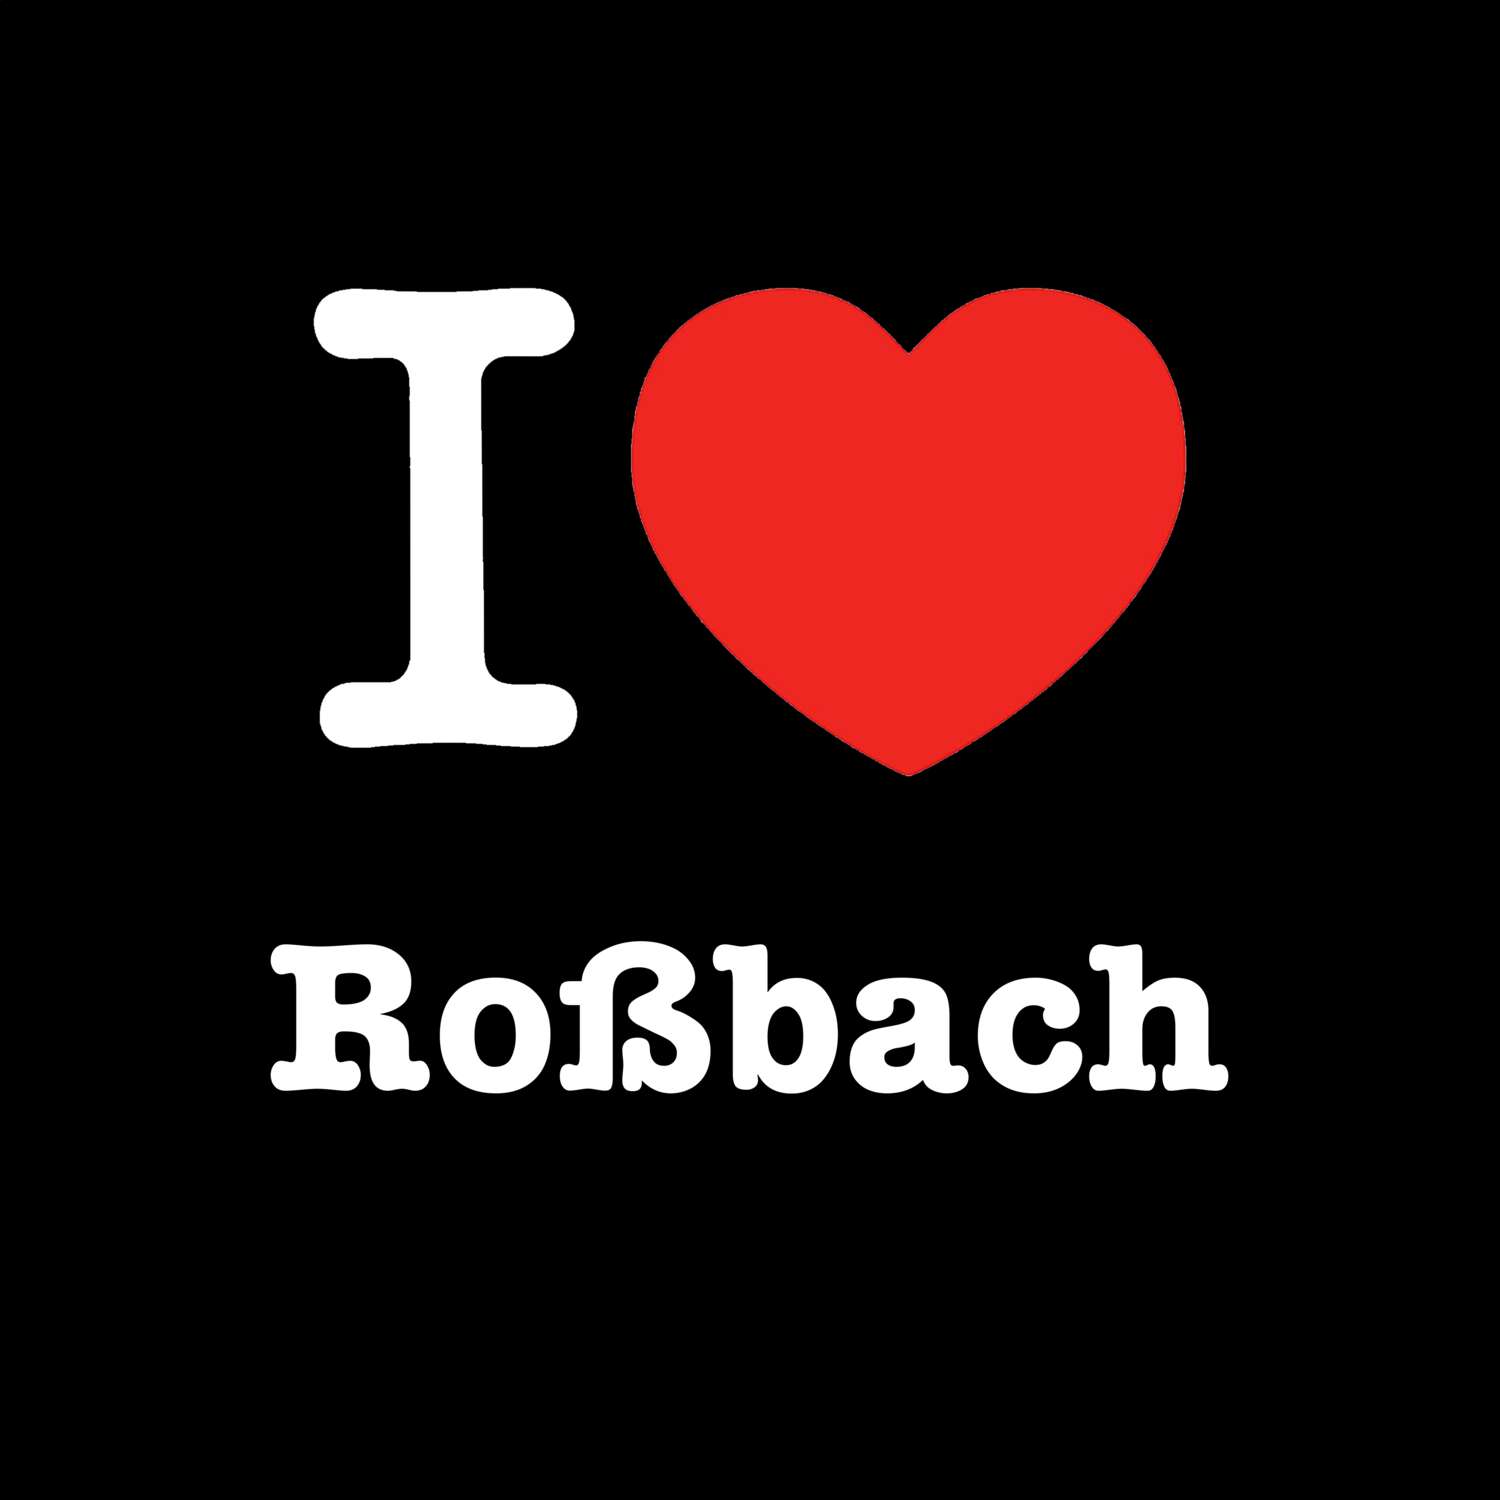 Roßbach T-Shirt »I love«